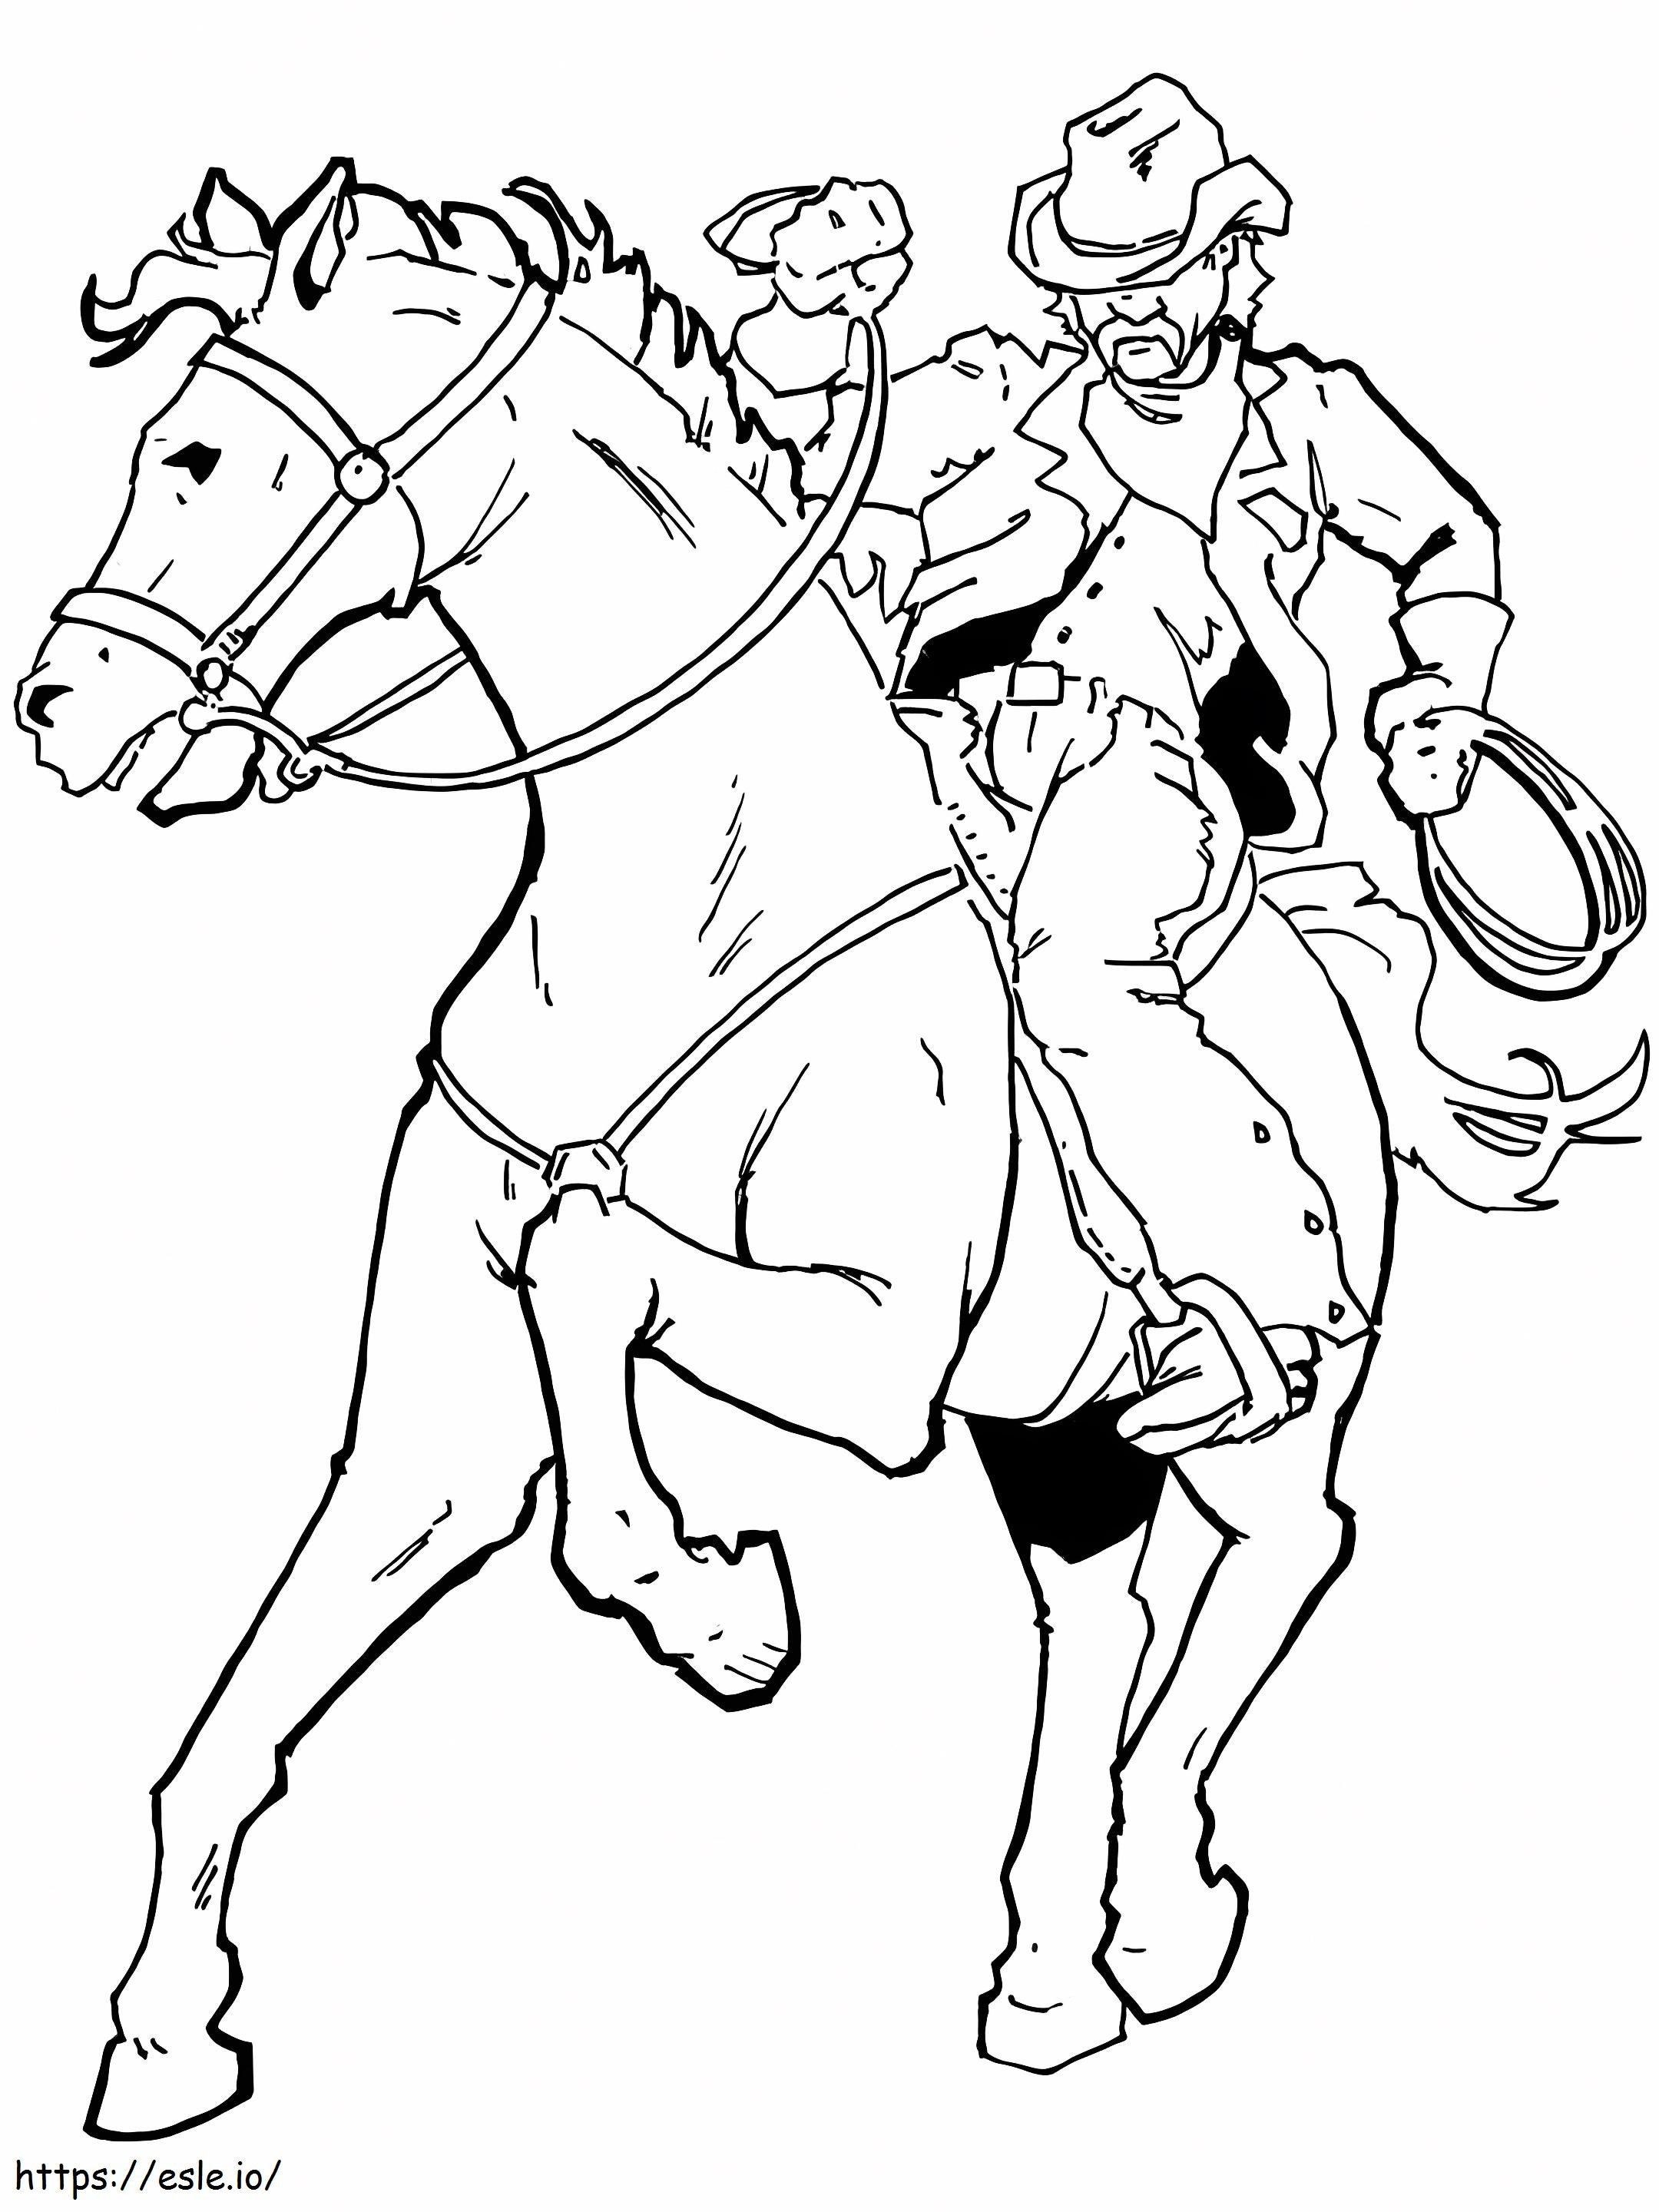 Cowboy-rijpaard kleurplaat kleurplaat